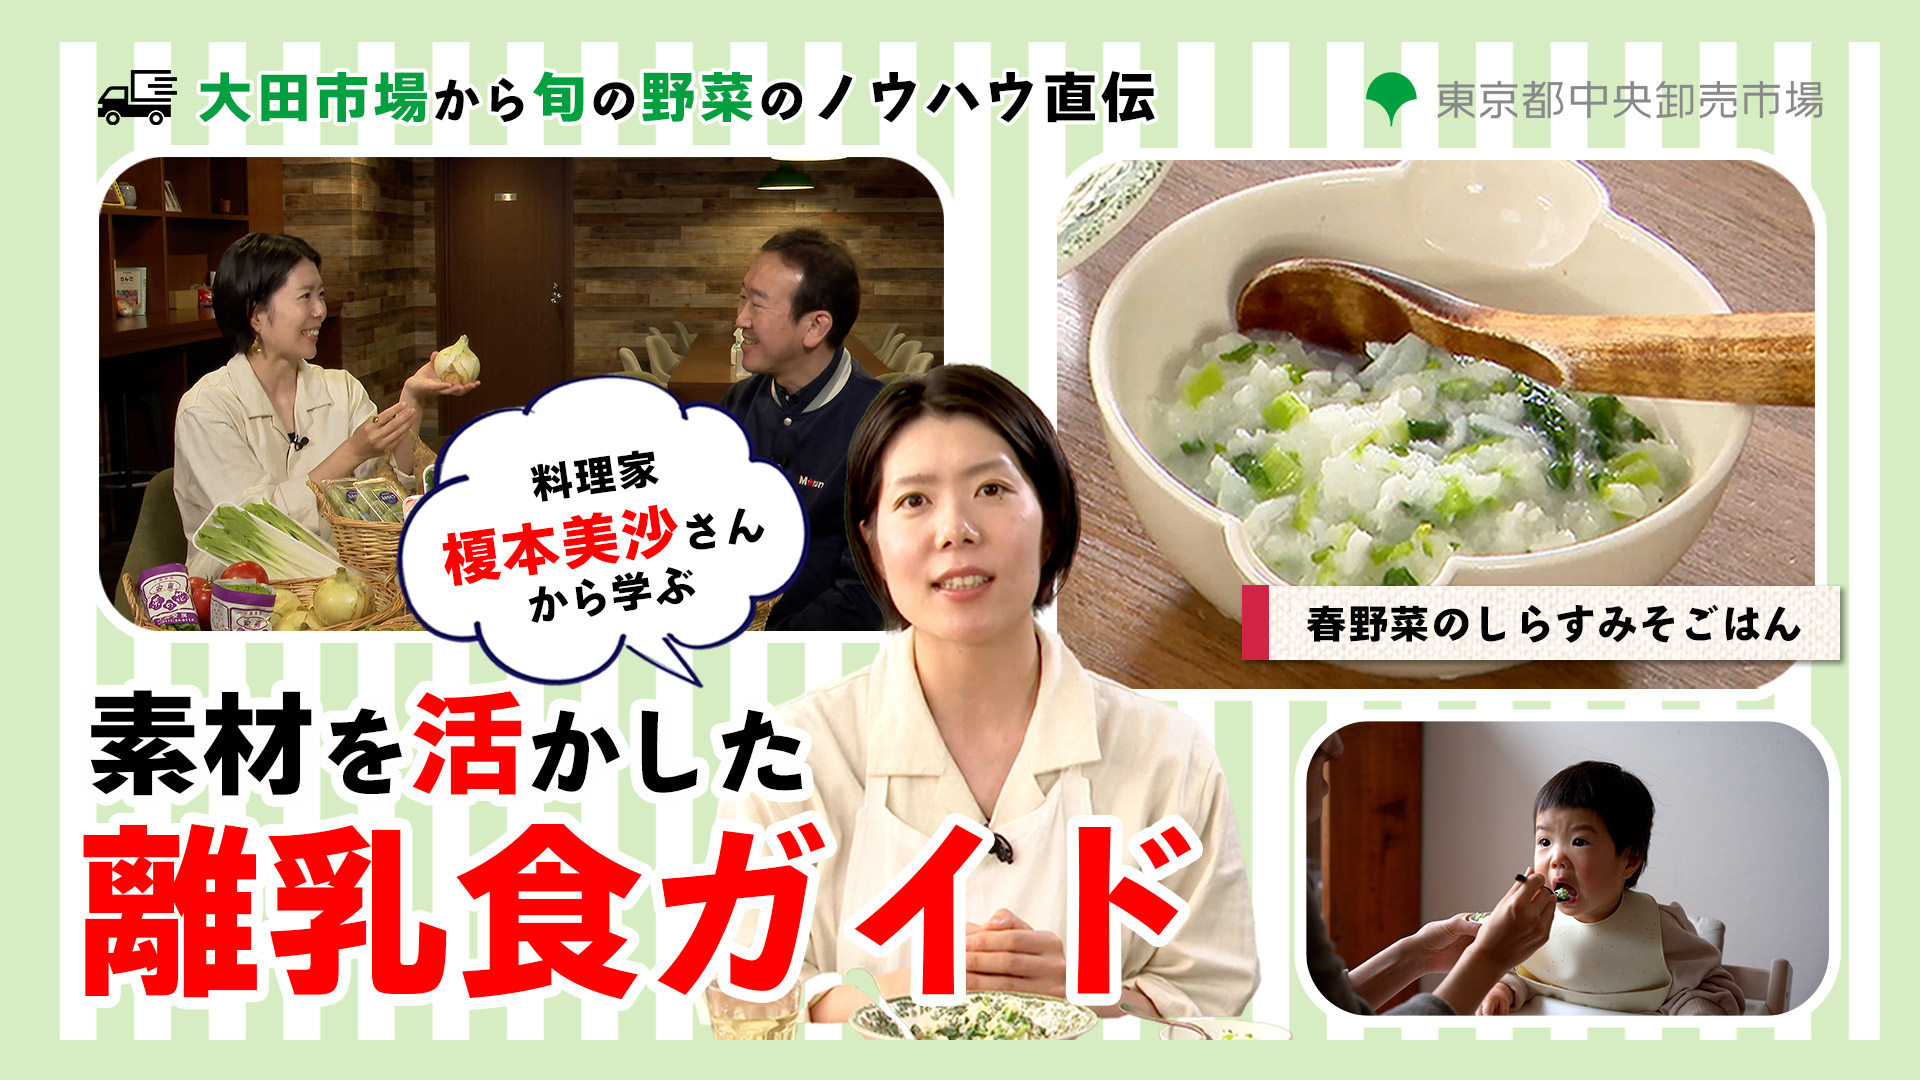 「料理家 榎本美沙さんから学ぶ、素材を活かした離乳食ガイド」映像制作